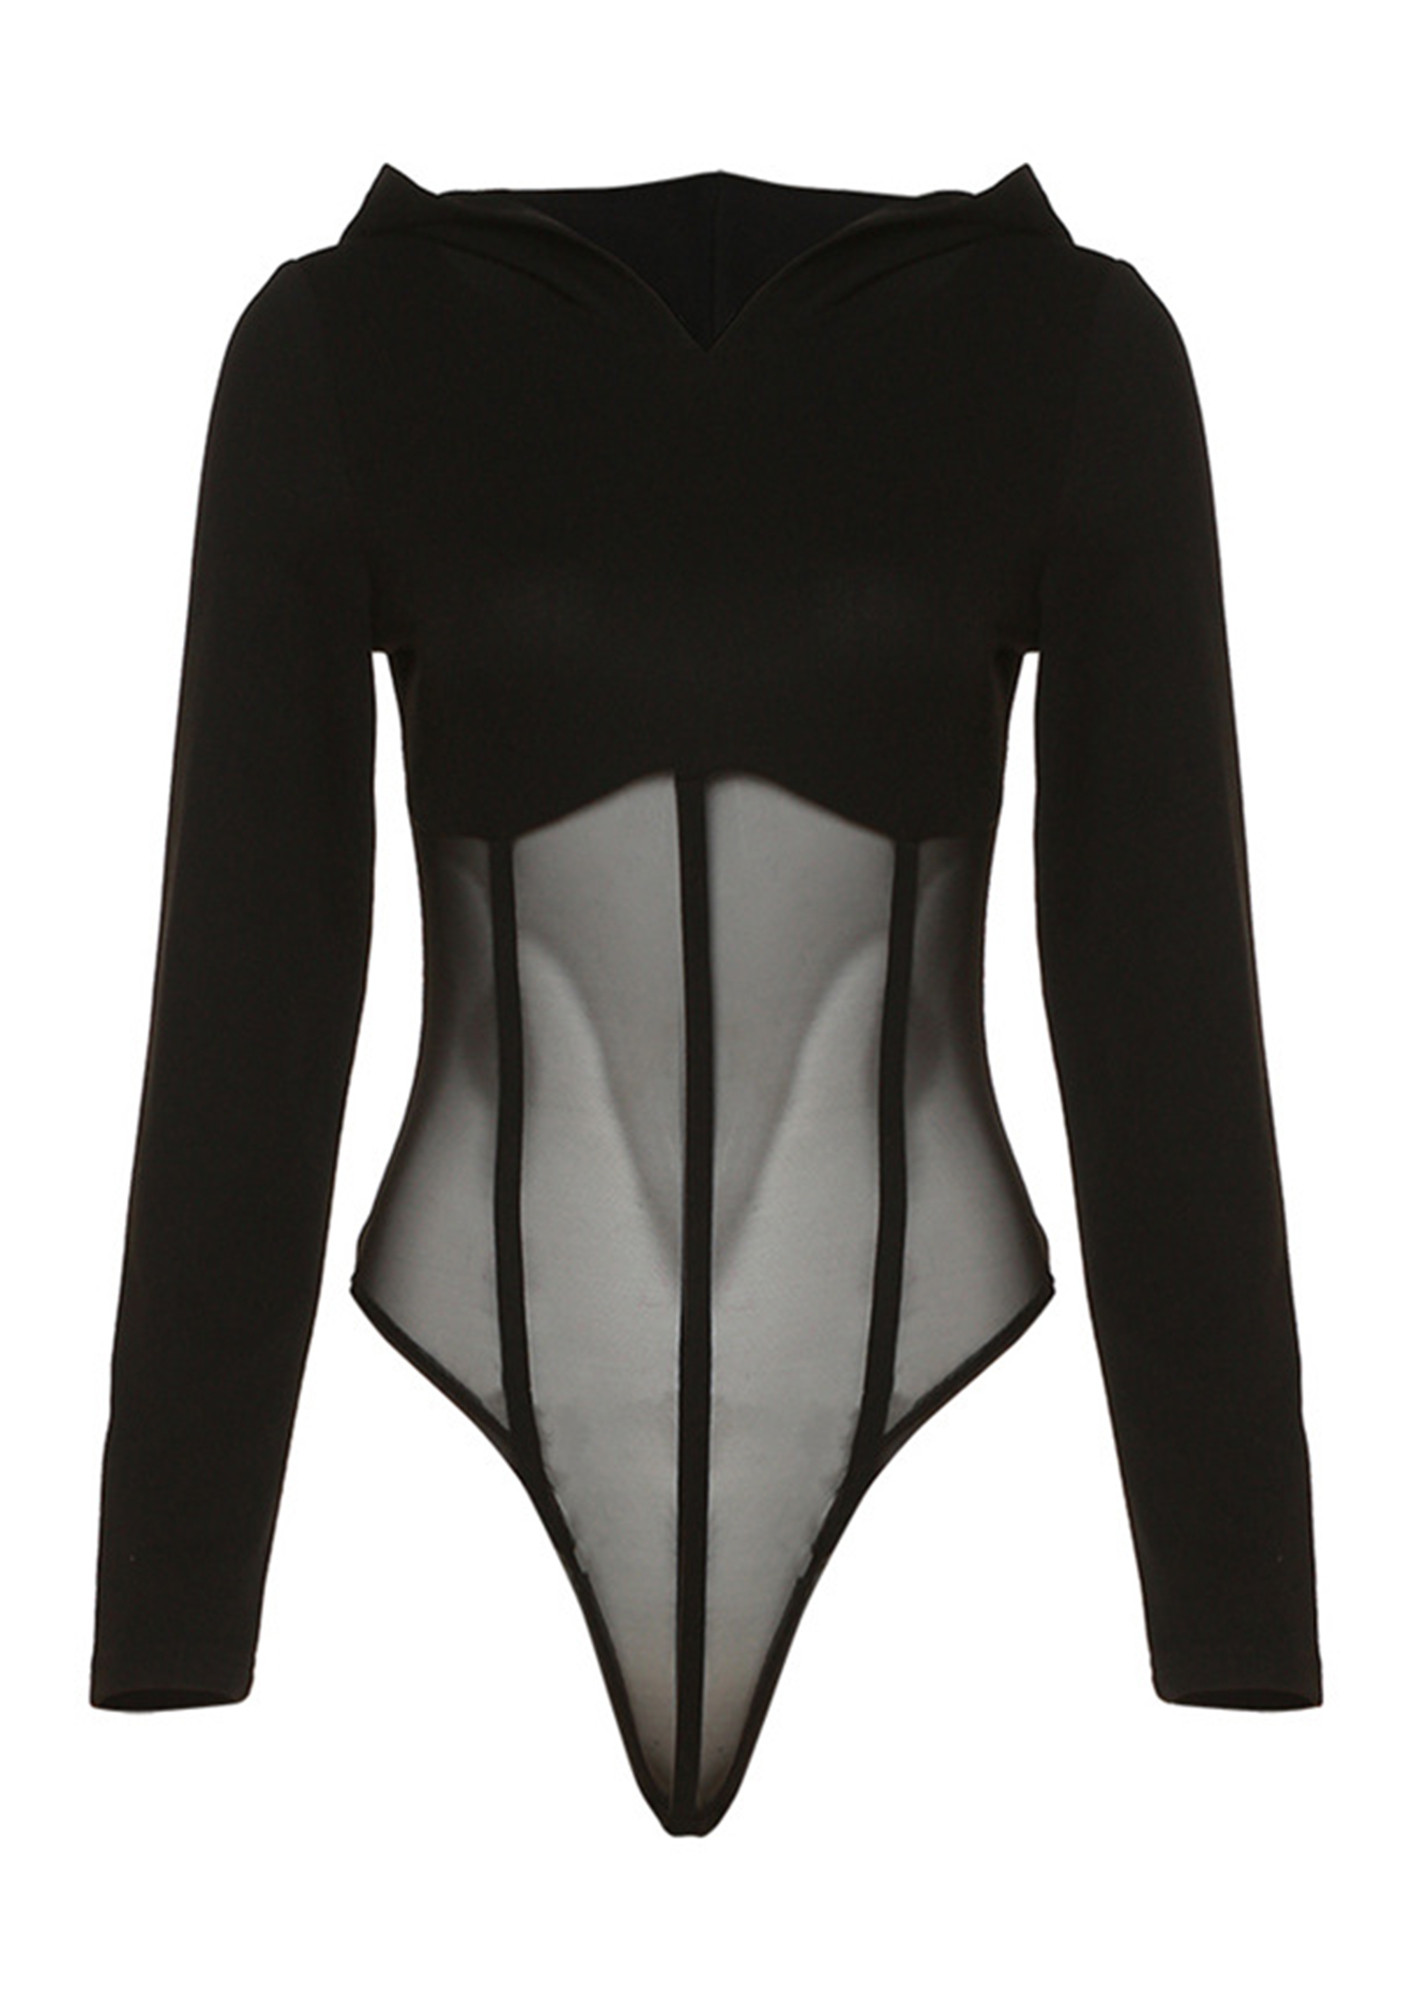 Chic Black Bodysuit - Lace Bodysuit - Long Sleeve Bodysuit - Lulus